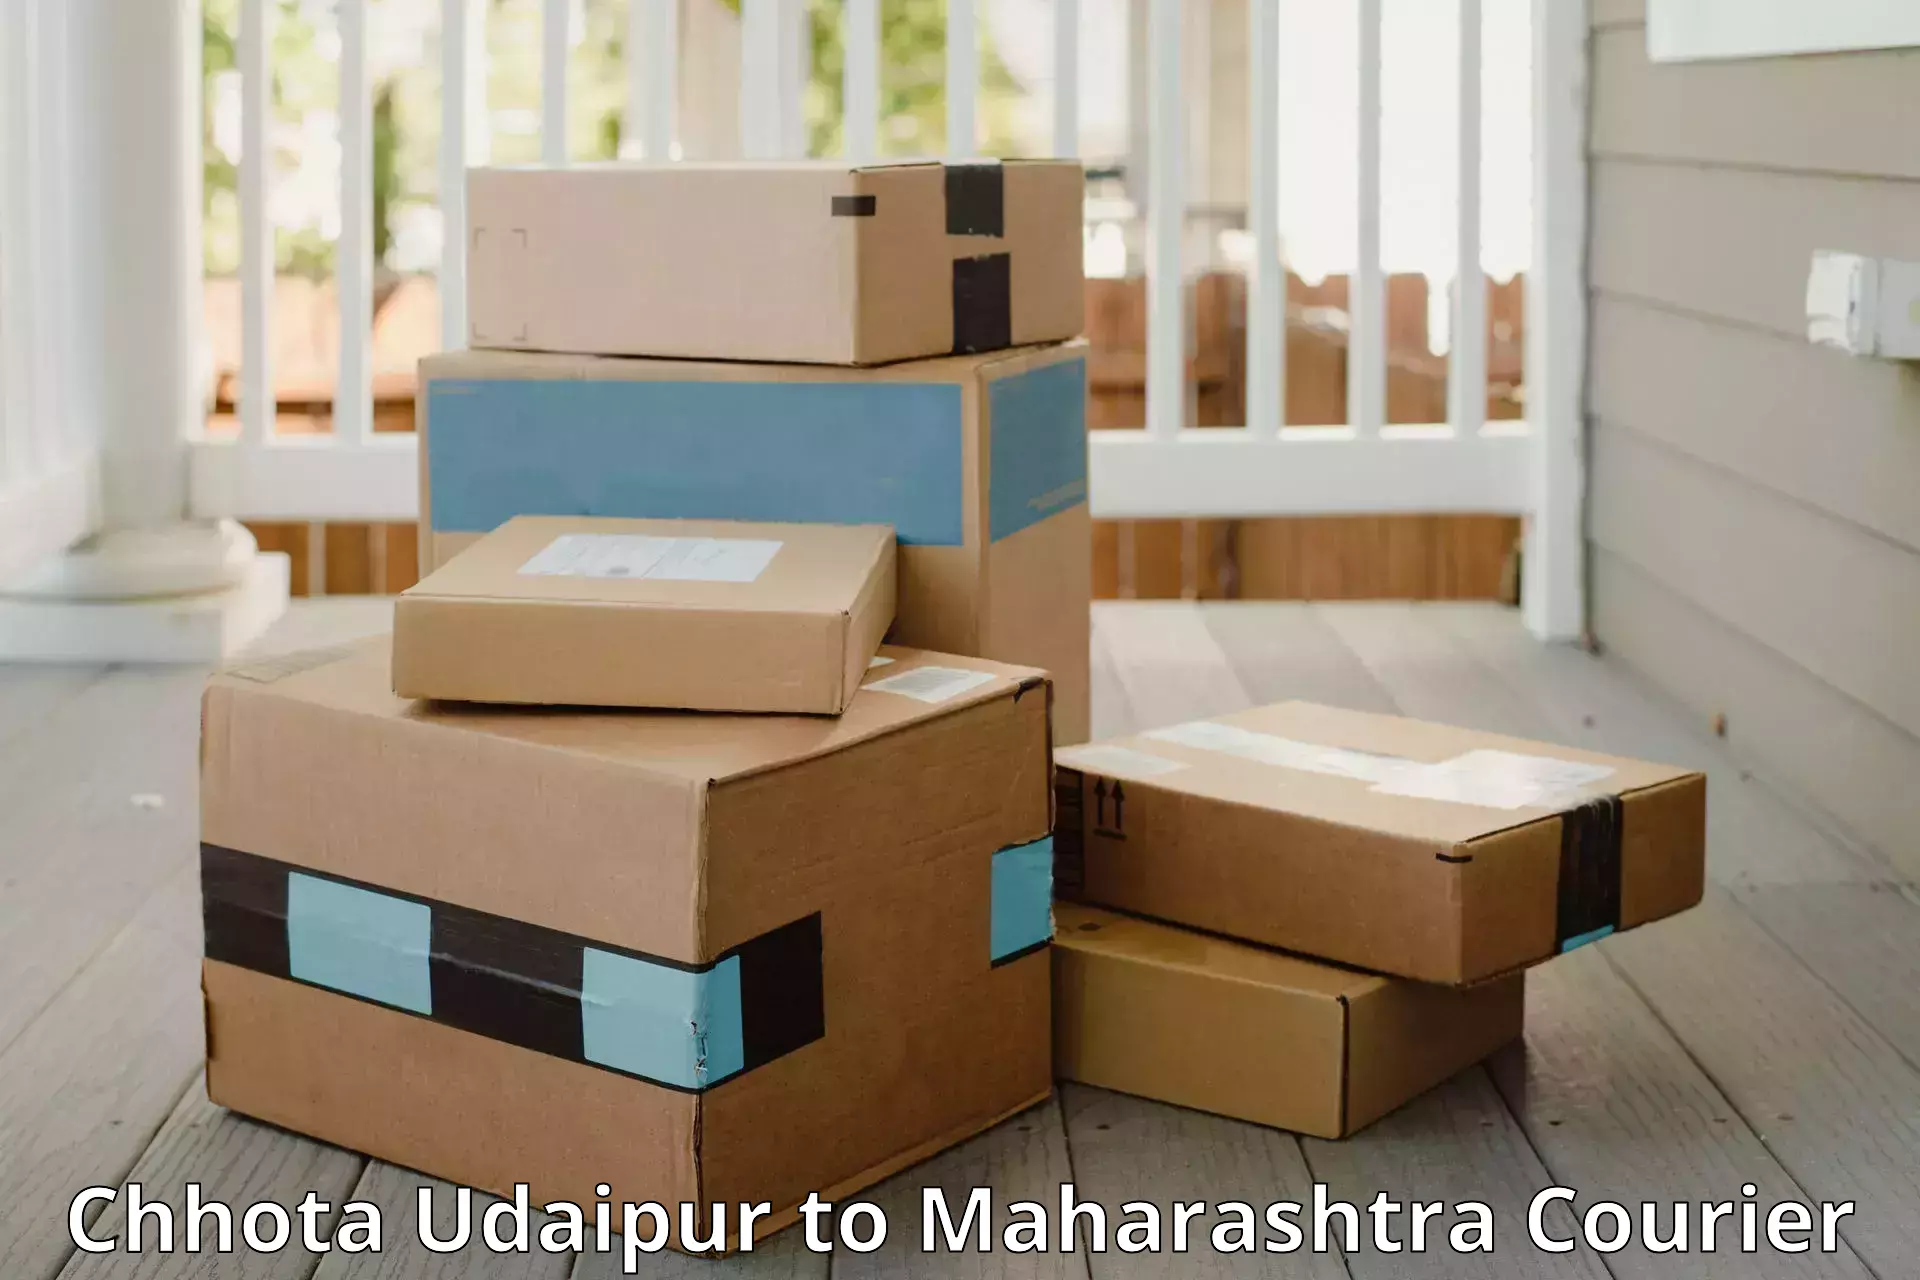 Luggage transport consultancy Chhota Udaipur to Maharashtra